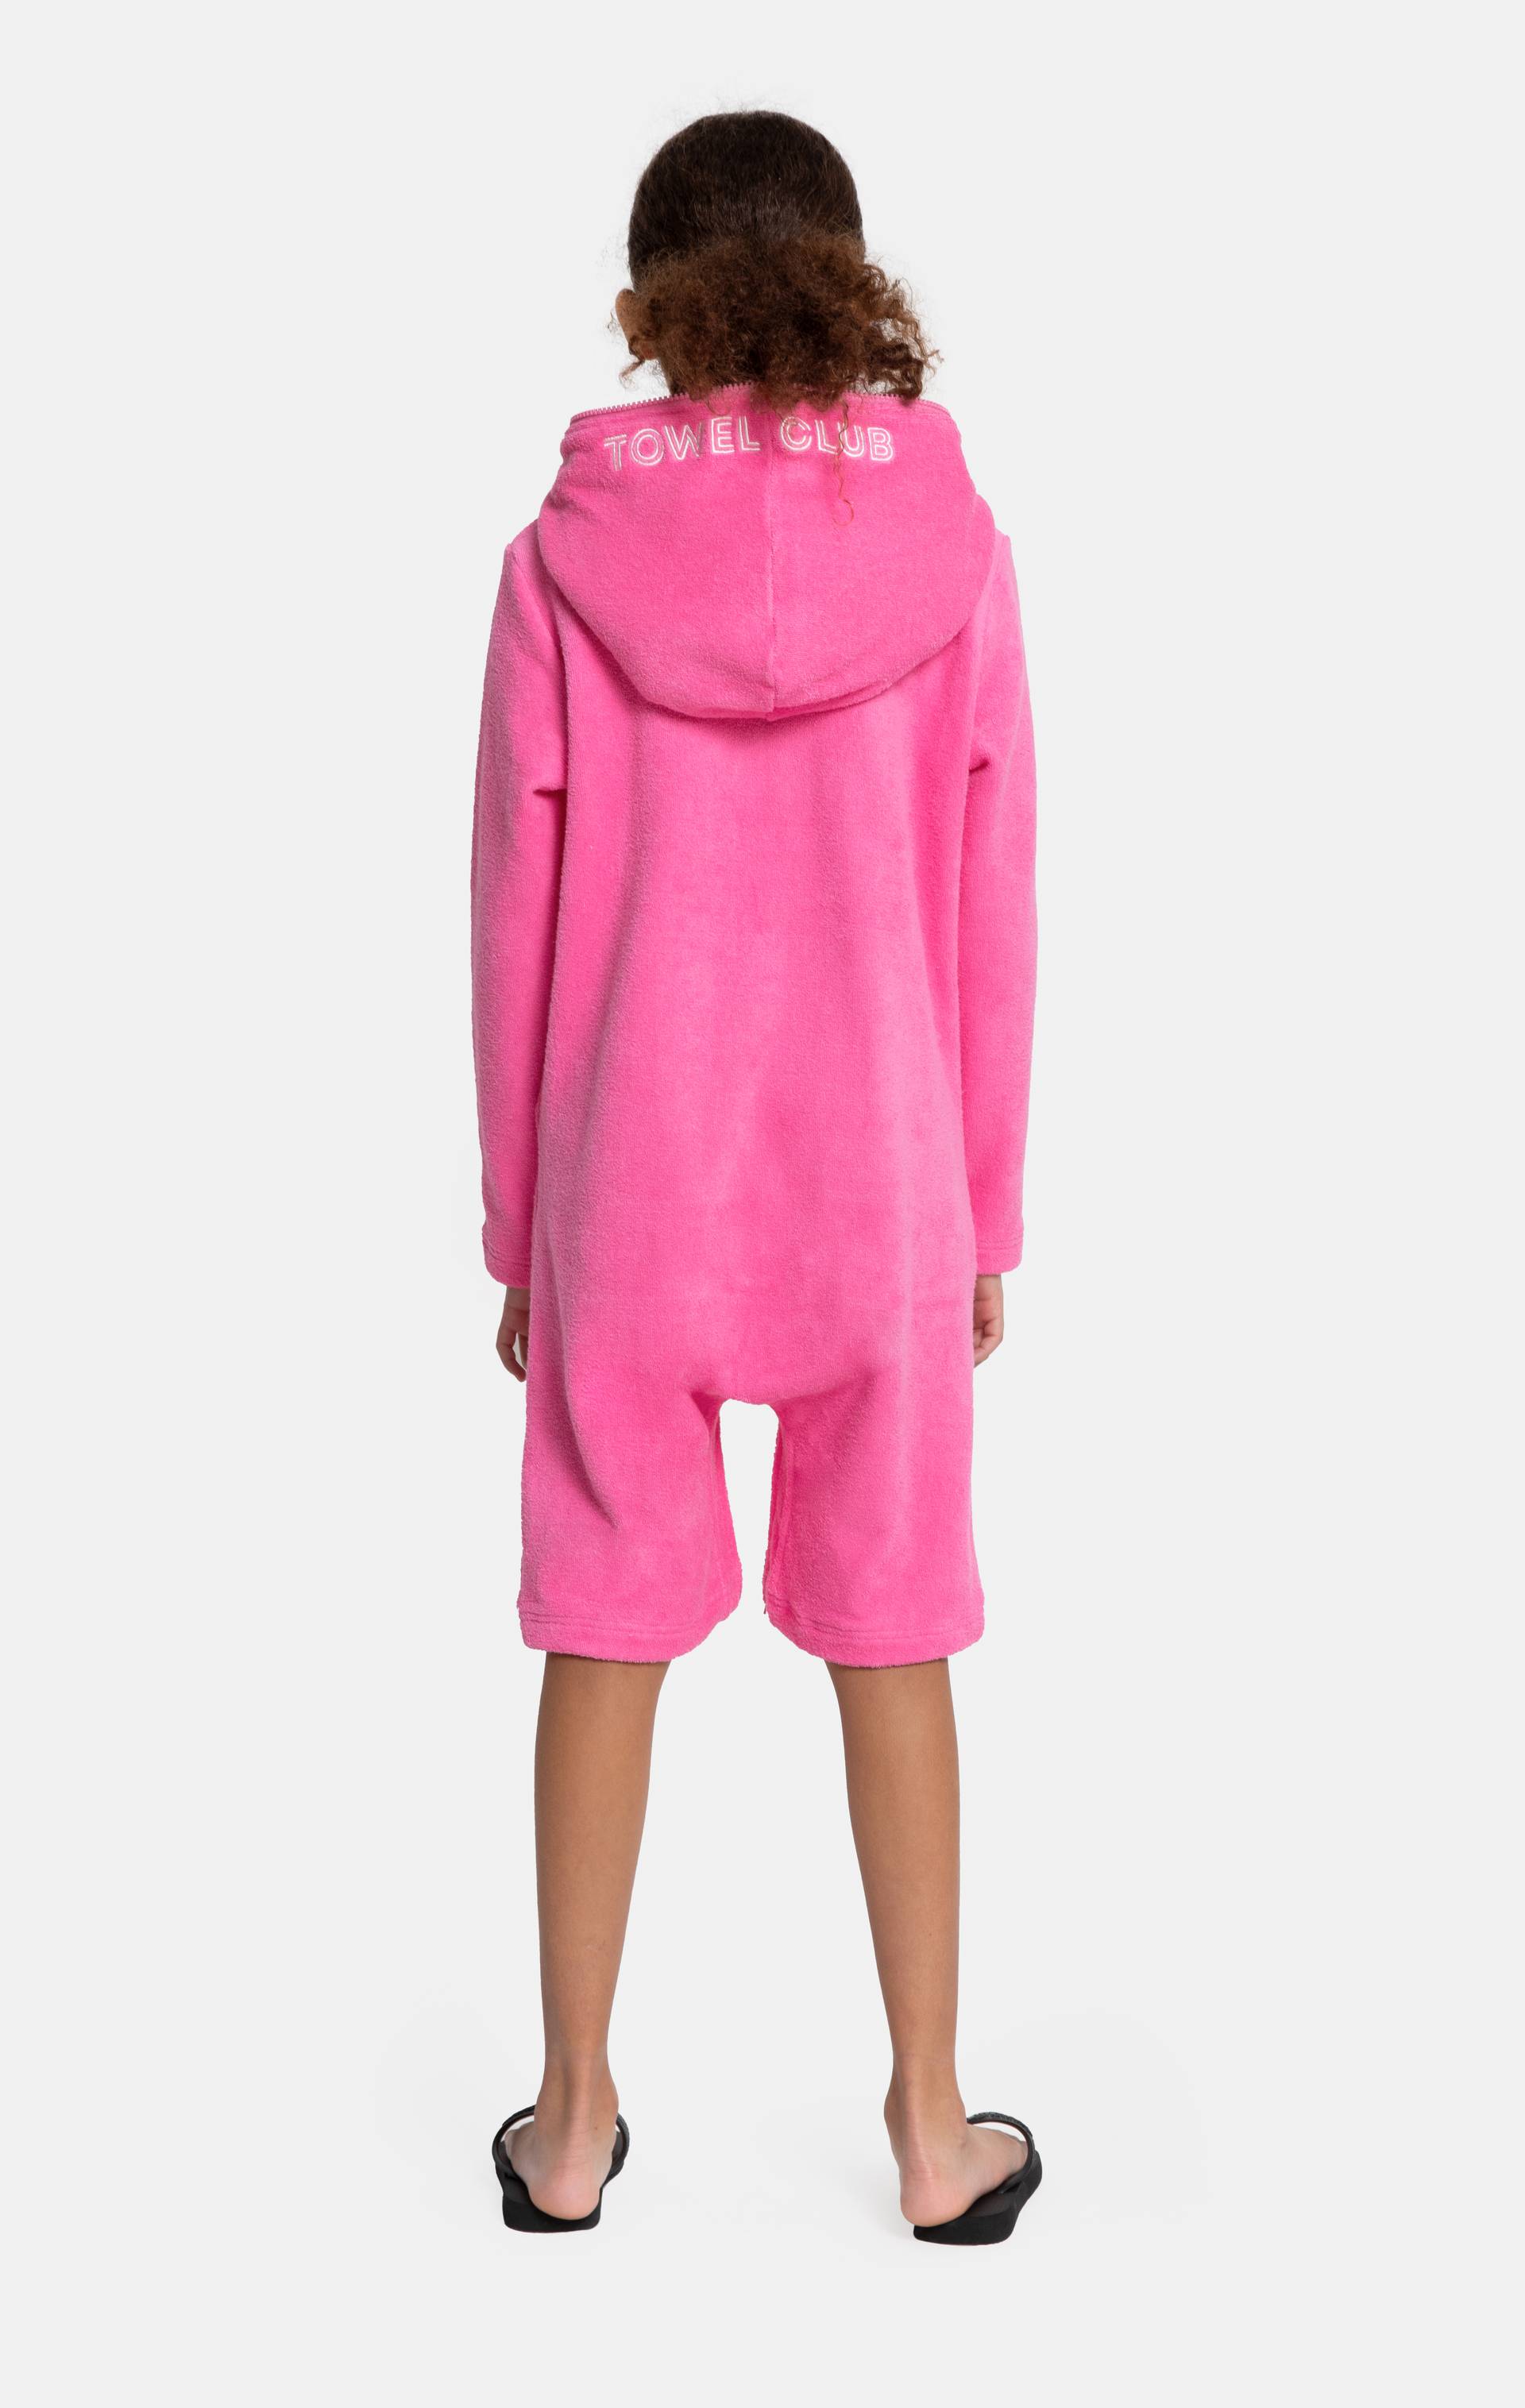 Onepiece Towel Club X Onepiece KIDS Towel Jumpsuit Pink - 2